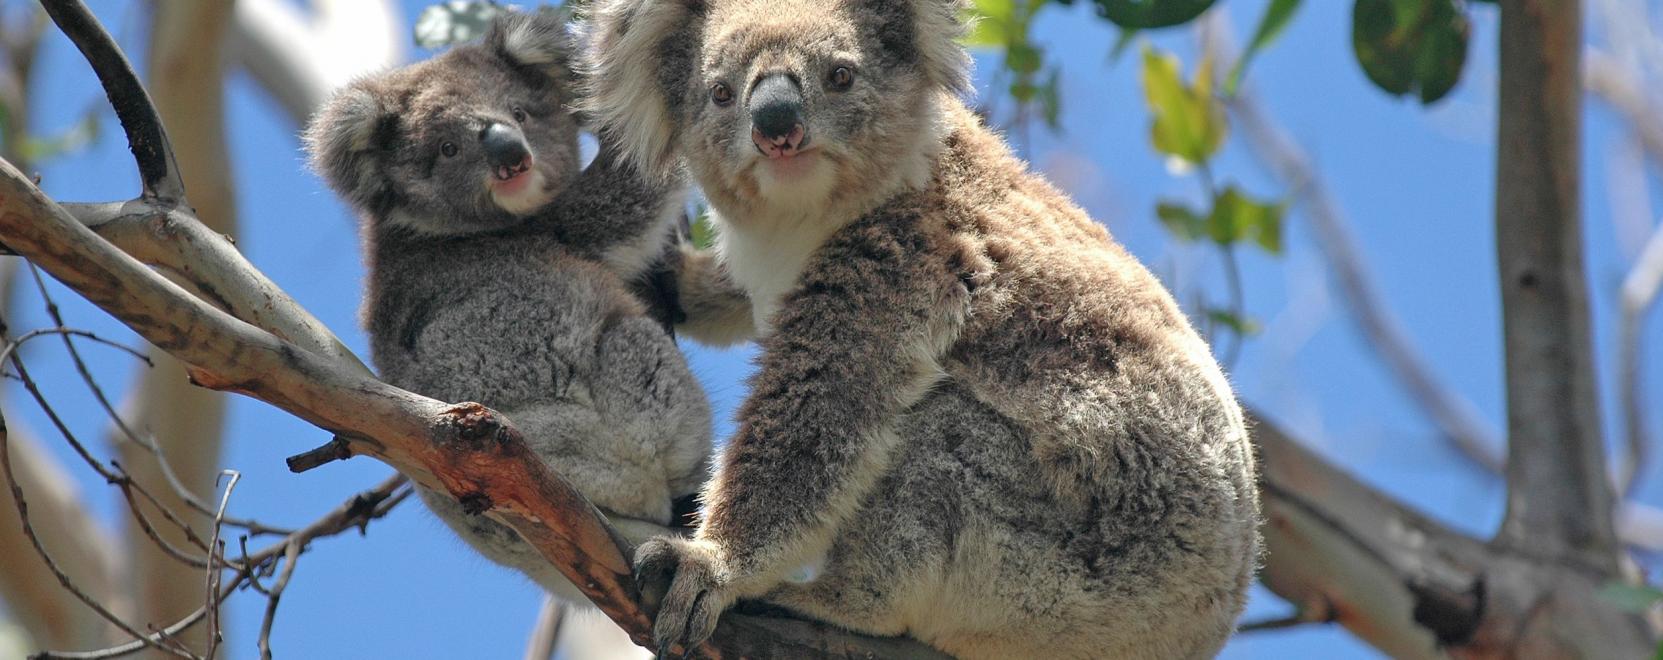 Drónok hozhatnak áttörést a koalák megfigyelésében